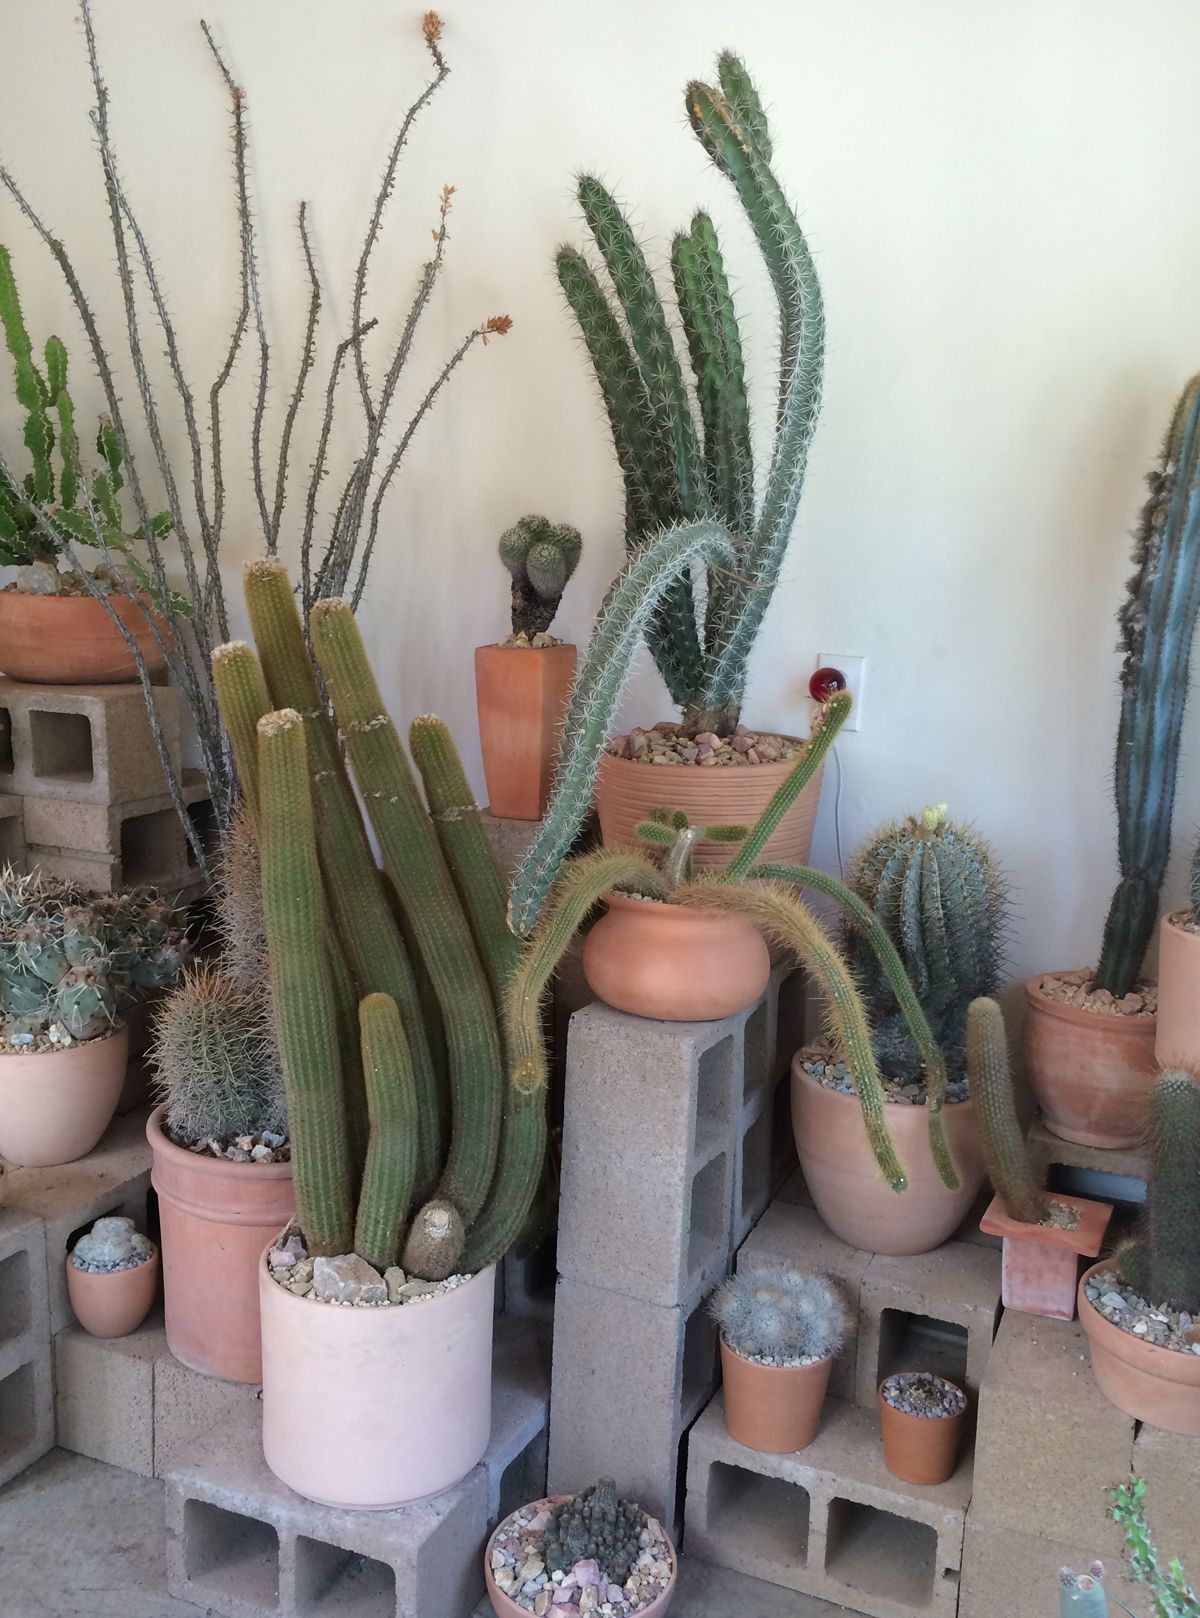 Cactus Store